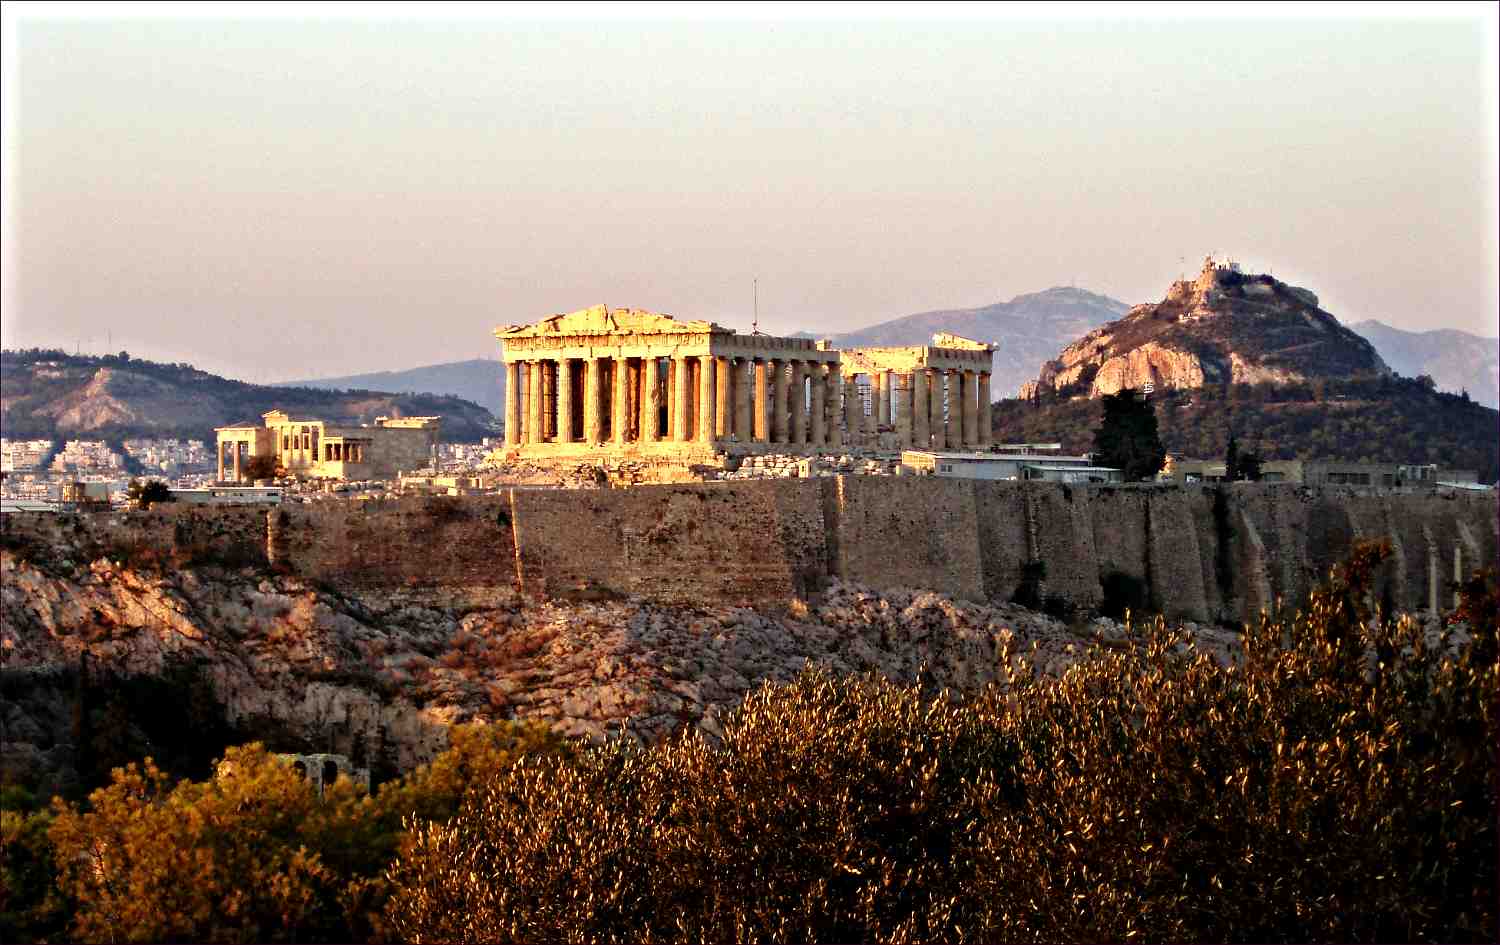 Sluncem pozlacená Akropole v Athénách